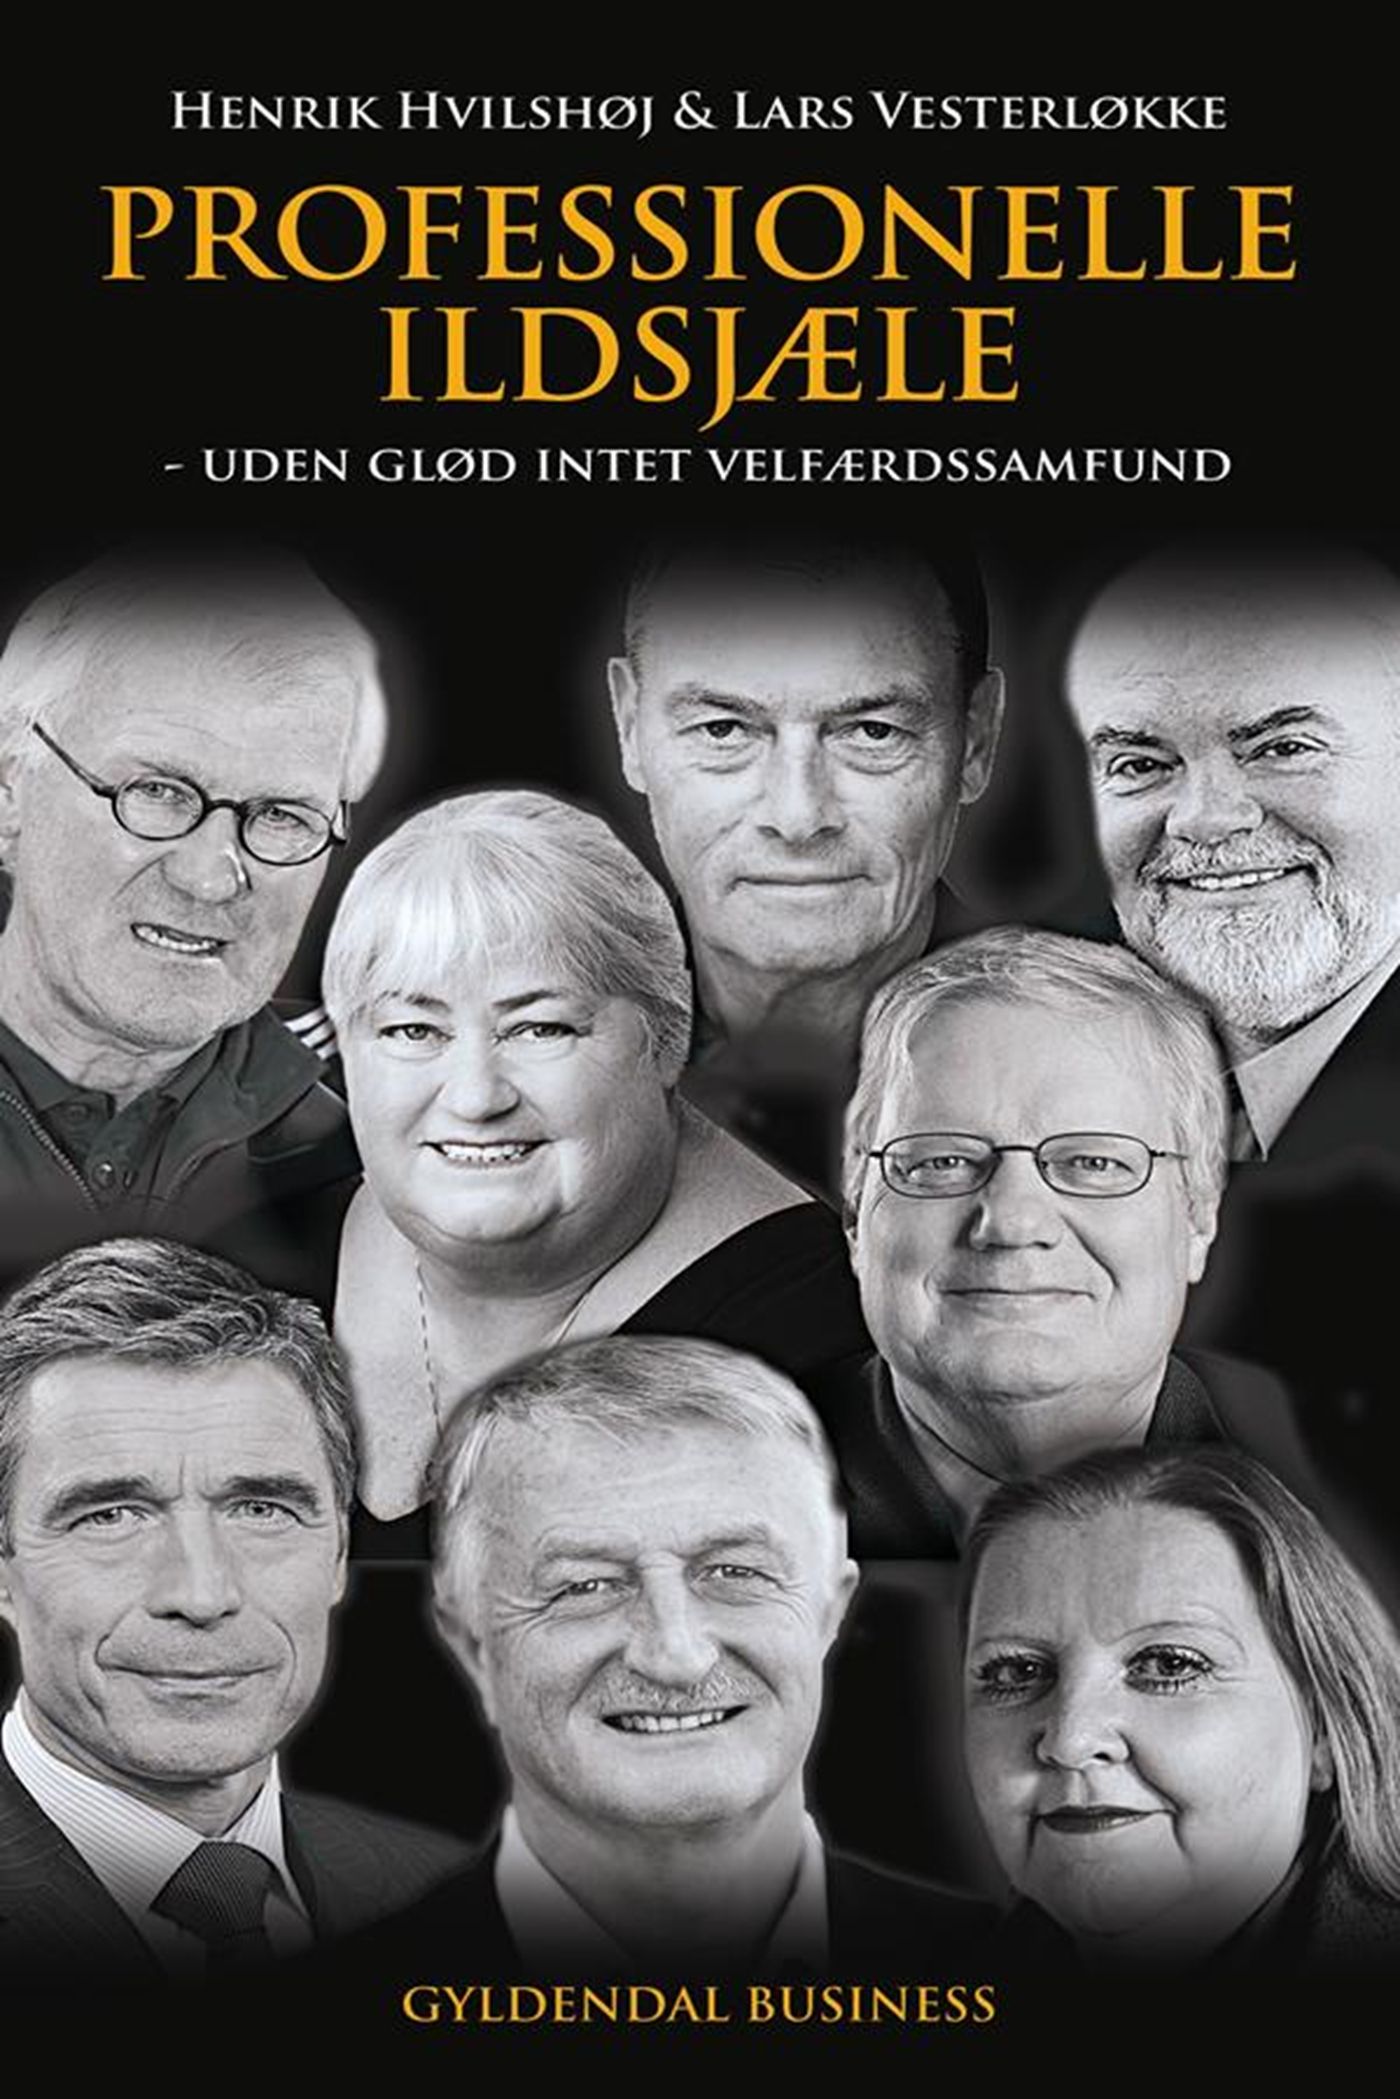 Professionelle ildsjæle, eBook by Henrik Hvilshøj, Lars Vesterløkke